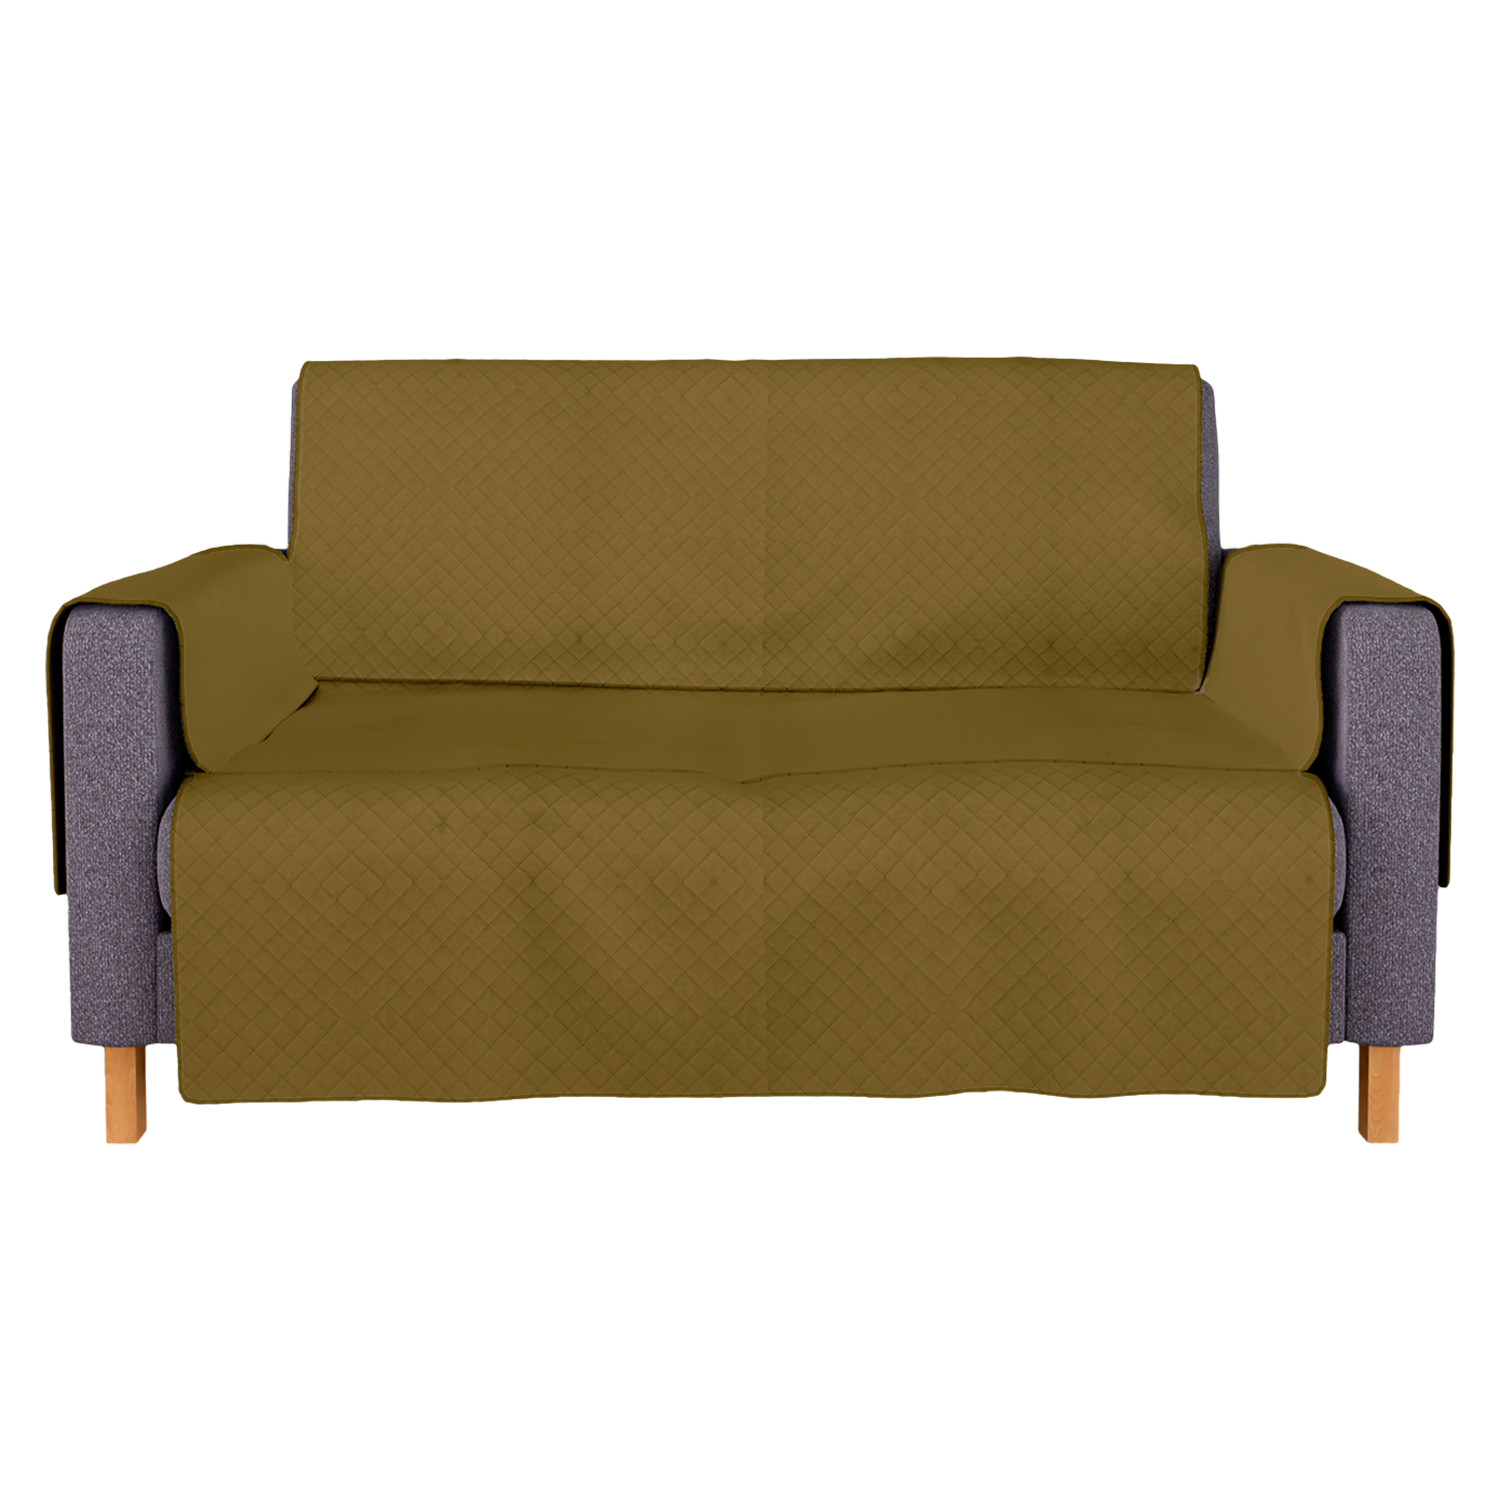 Kuber Industries Sofa Cover | Velvet Sofa Cover | 2-Seater Sofa Cover for Home Décor | 450 GSM Sofa Cover Set for Living Room | Sofa Slipcover | Couch Cover | Gold